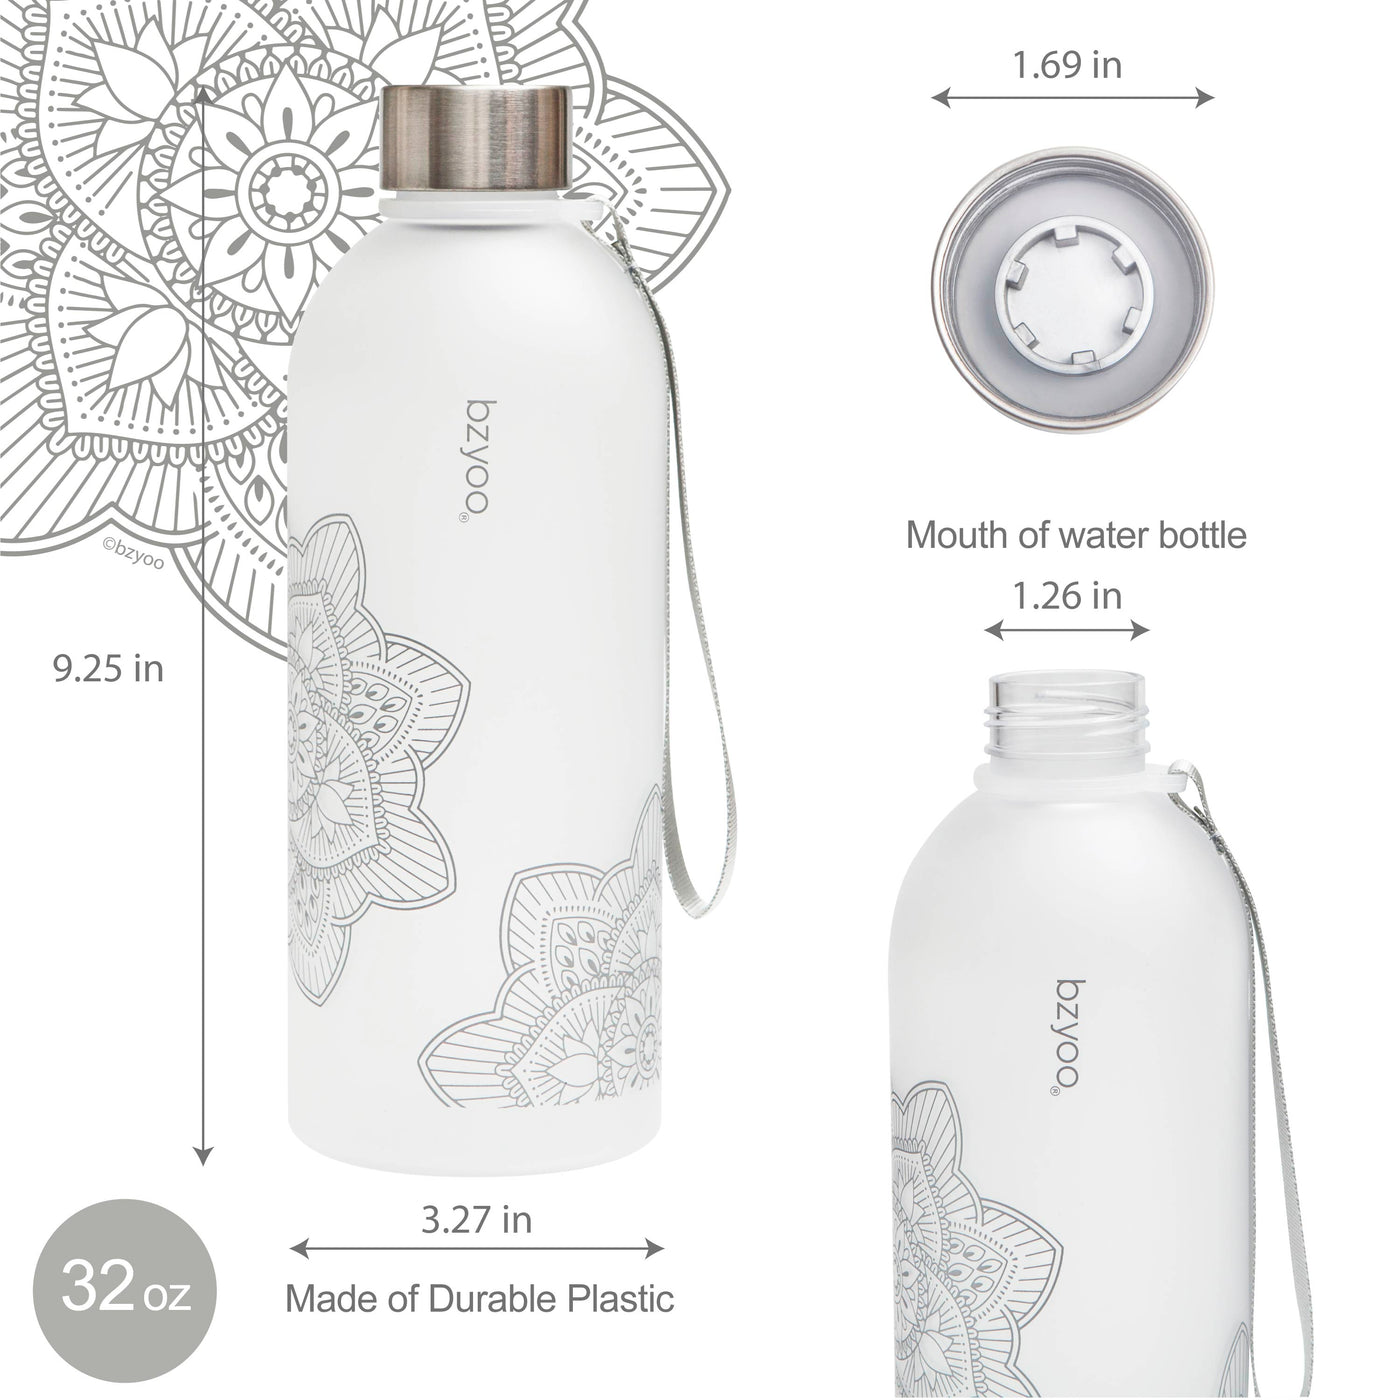 32oz La La Mandala Time Marker Tritan Water Bottle w/ Carrying Strap - Silver